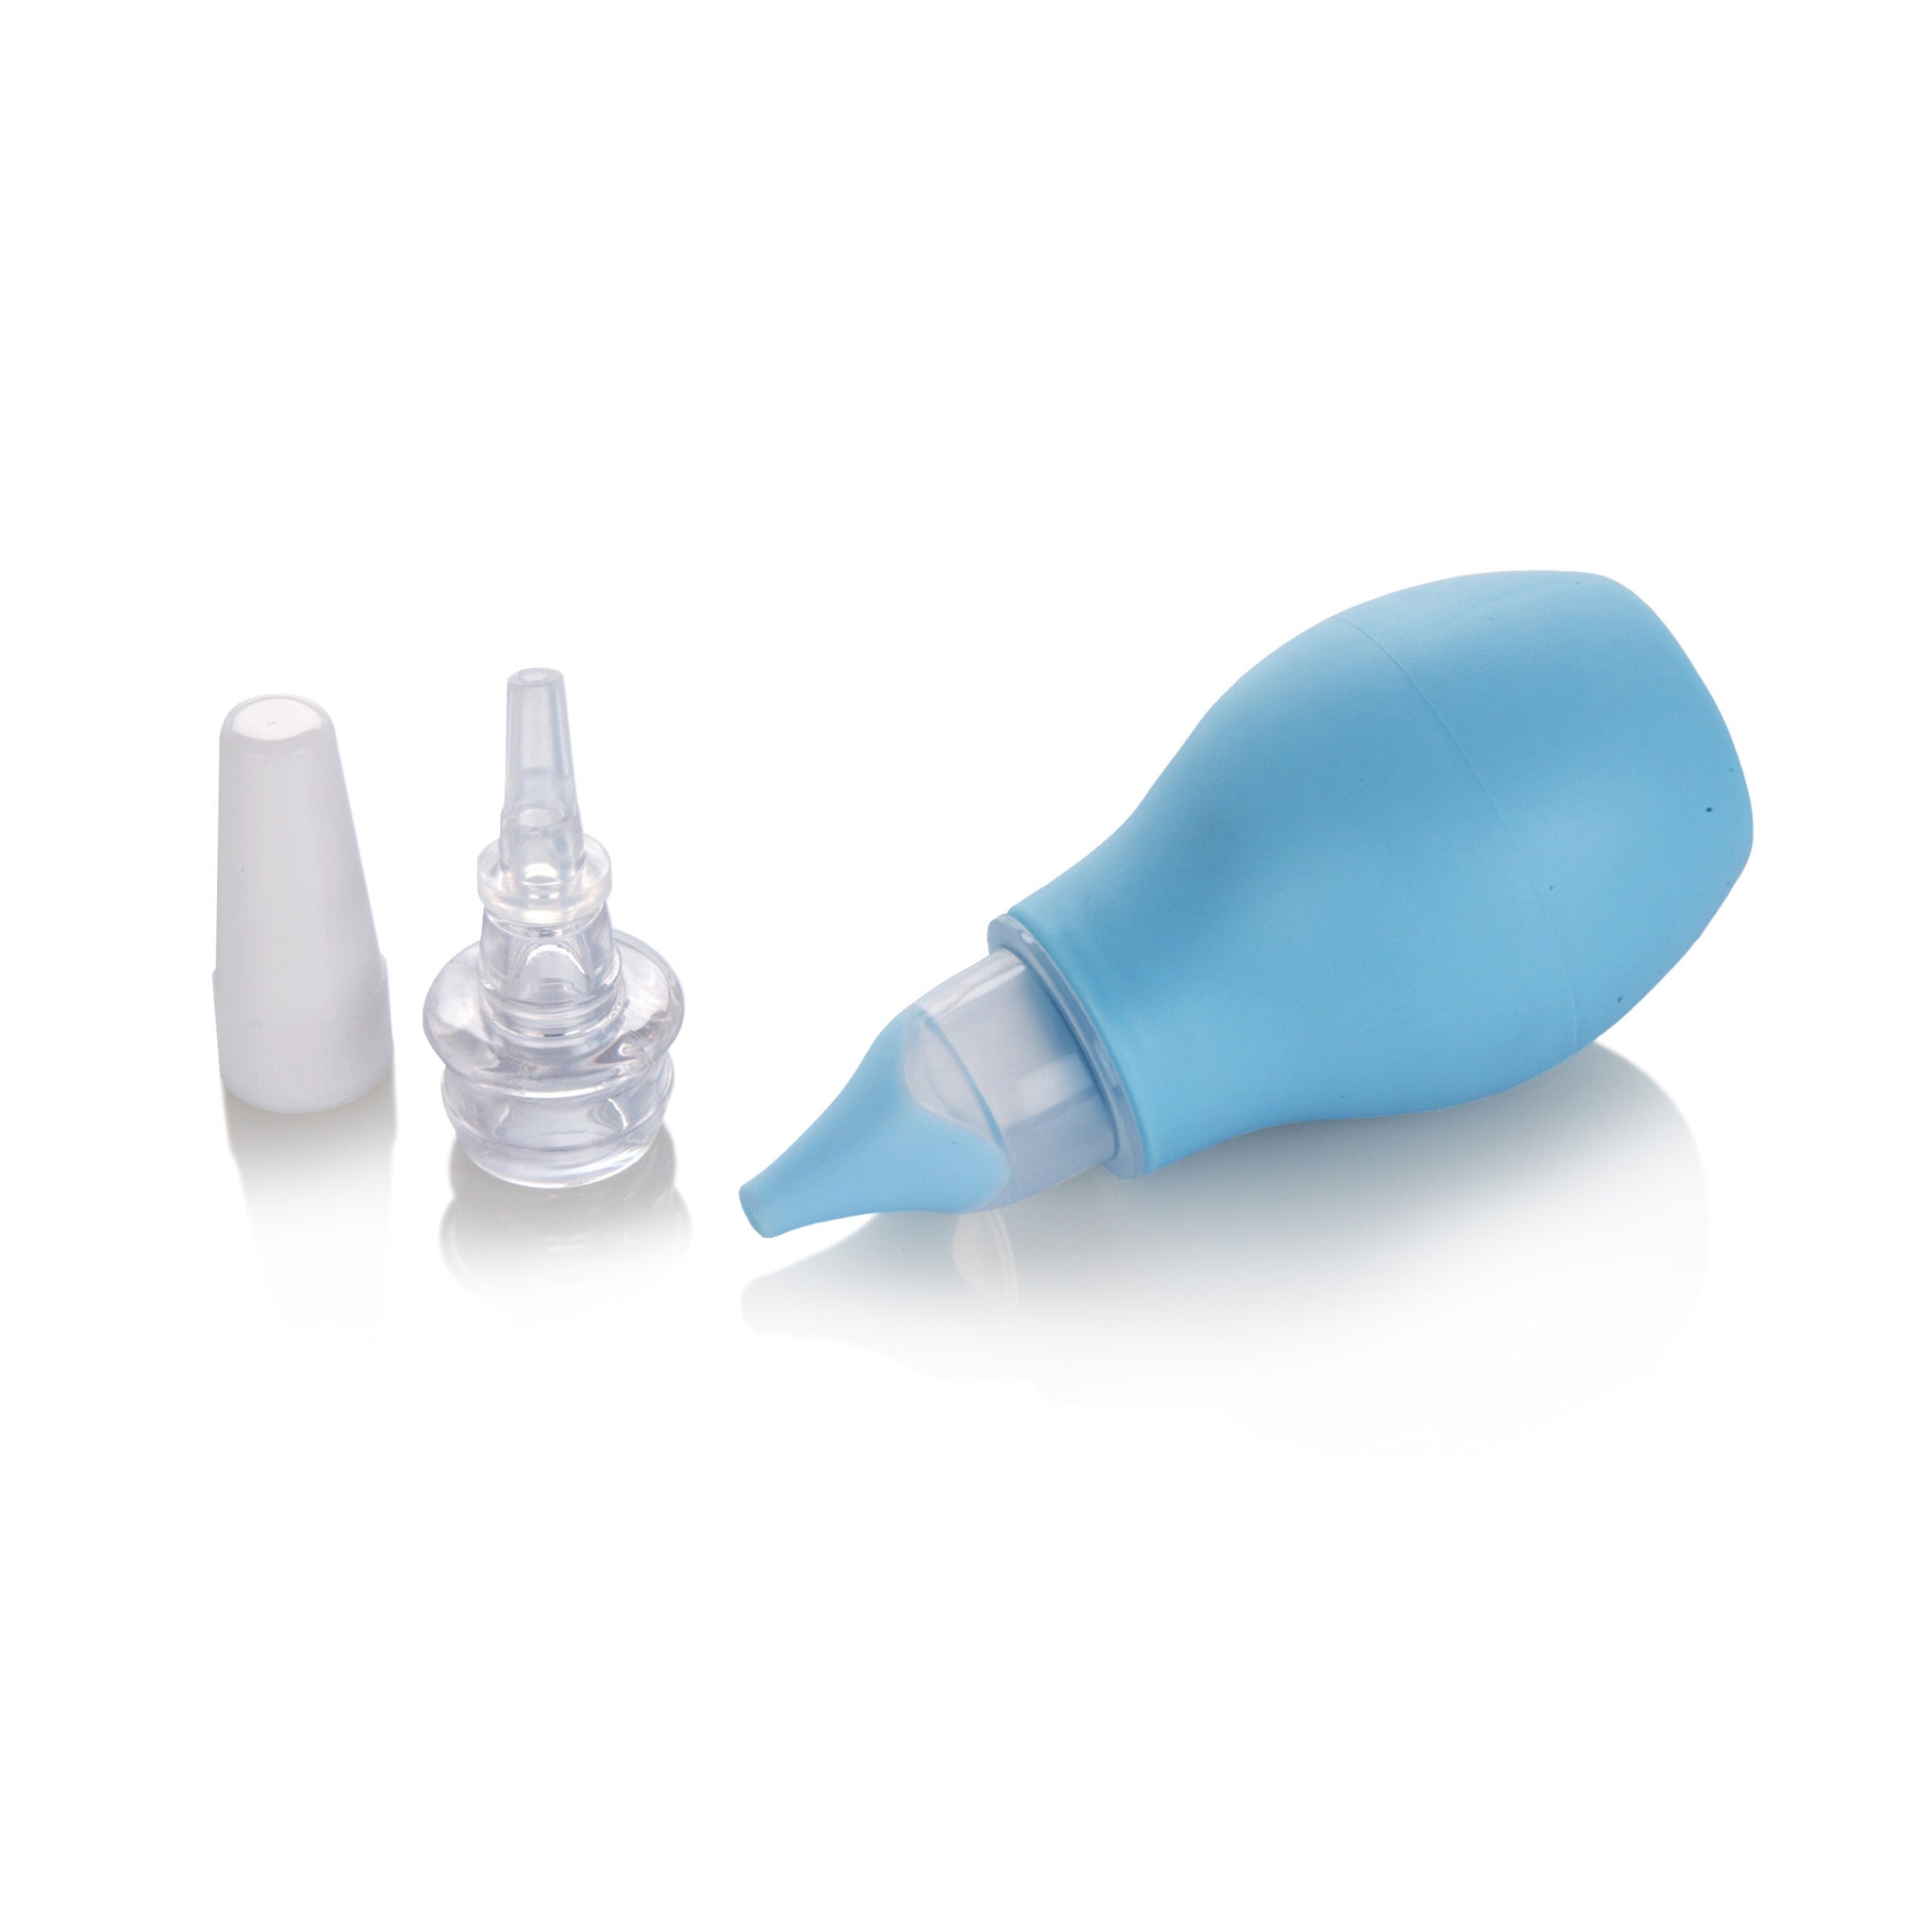 How to use a bulb syringe or nasal aspirator